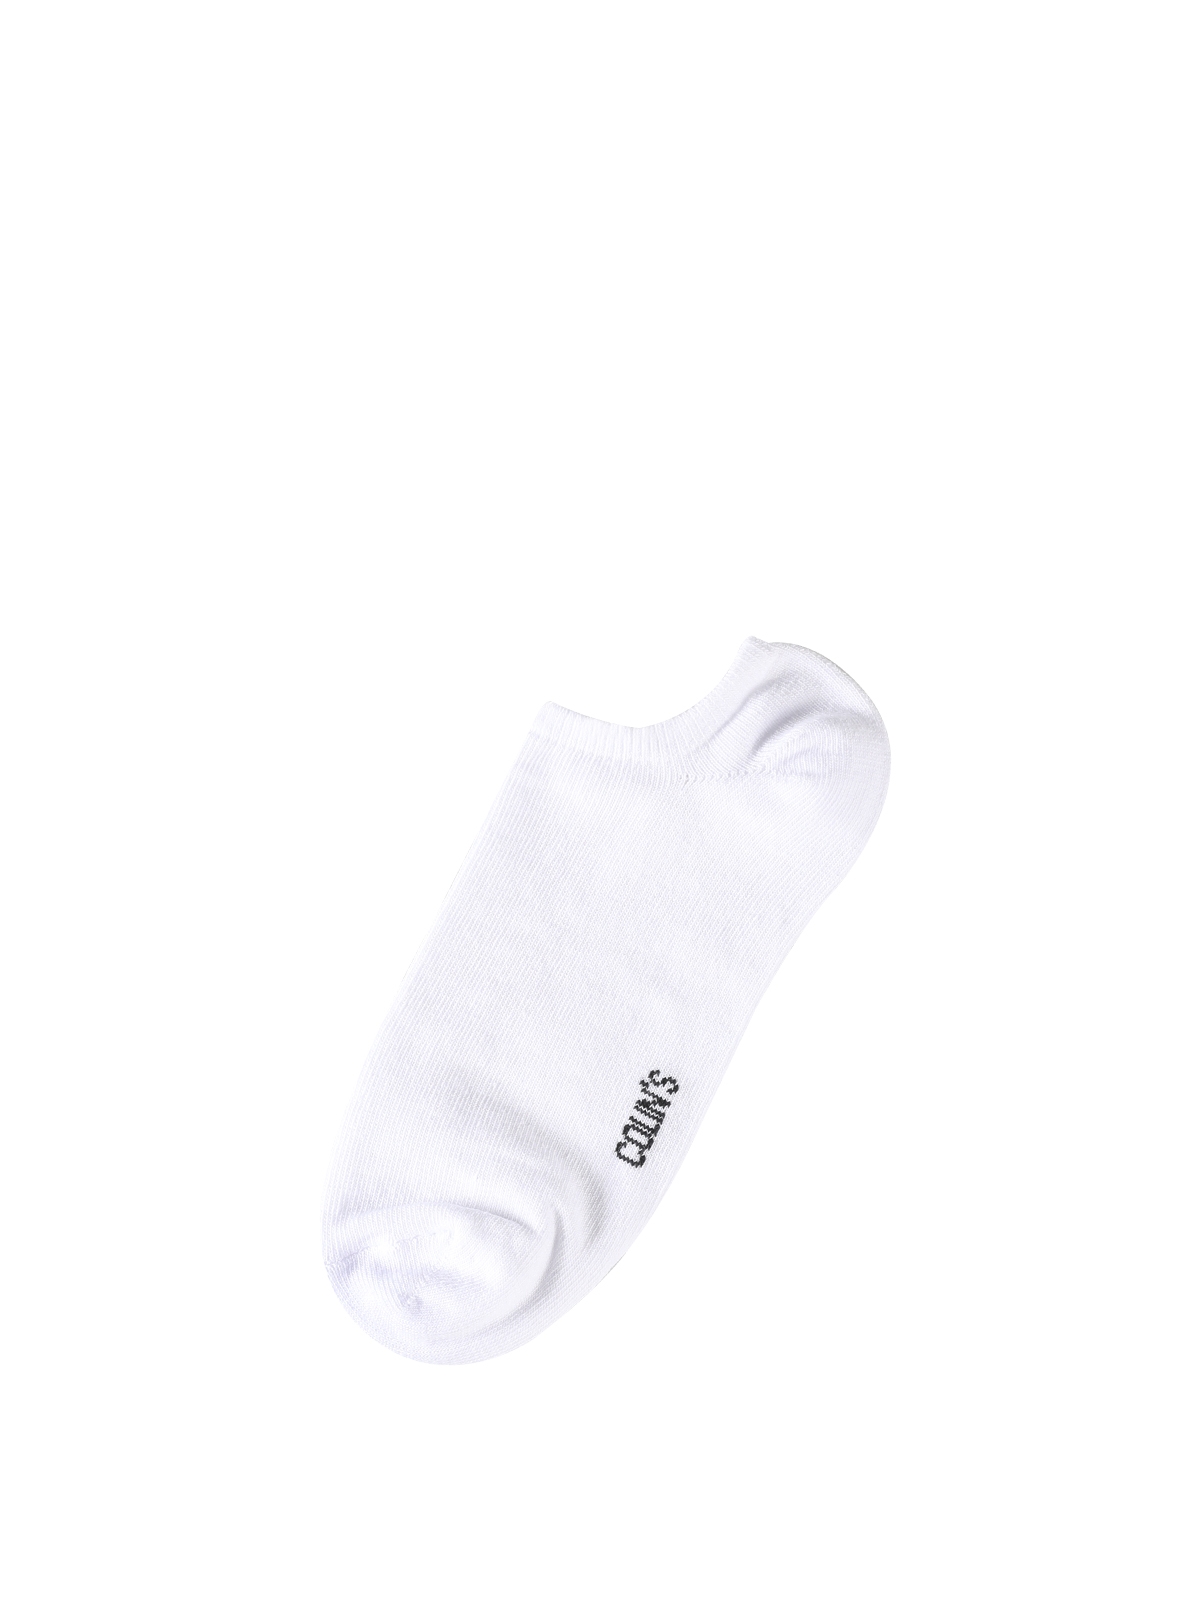 Kadın Beyaz Çorap Claacwsck0251810